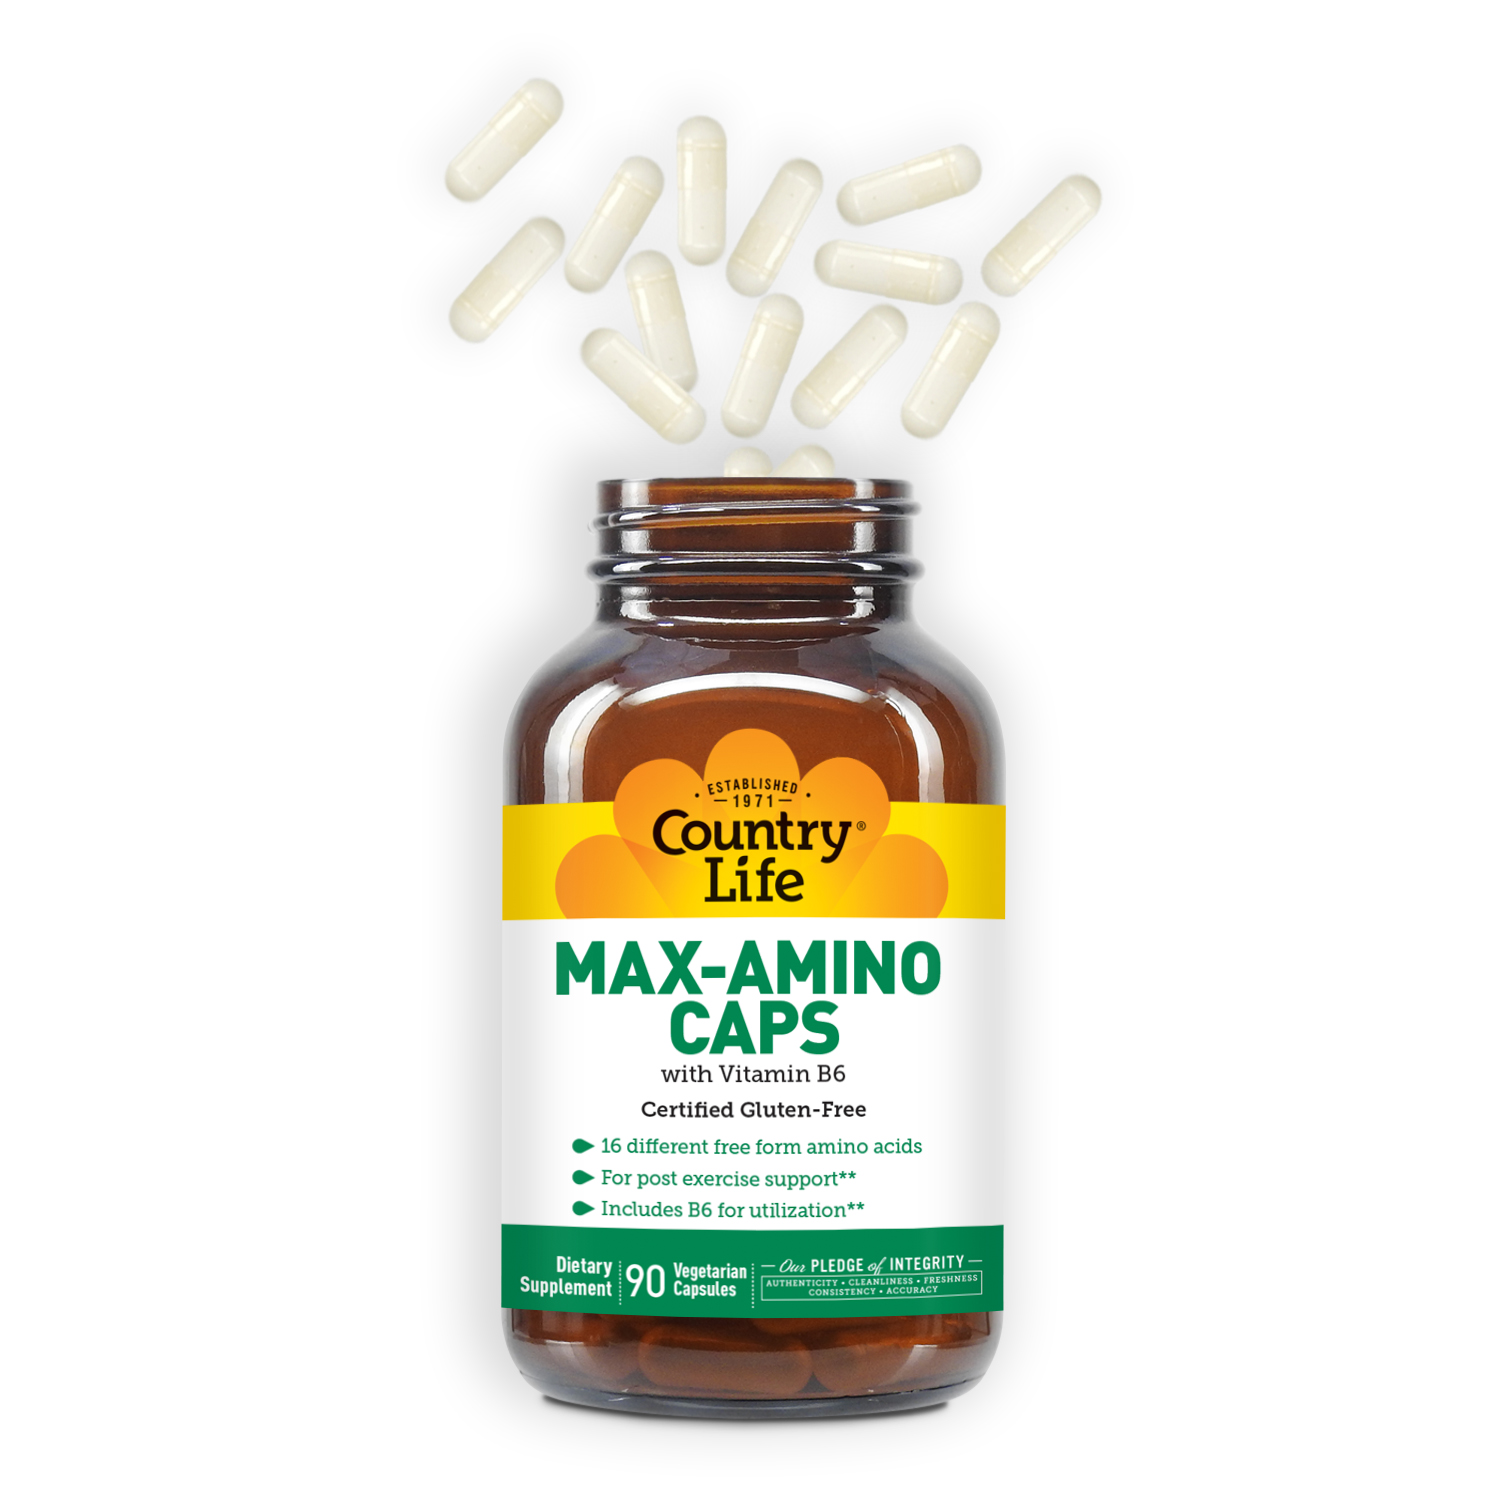 Country Life Vitamins' Max-Amino Caps